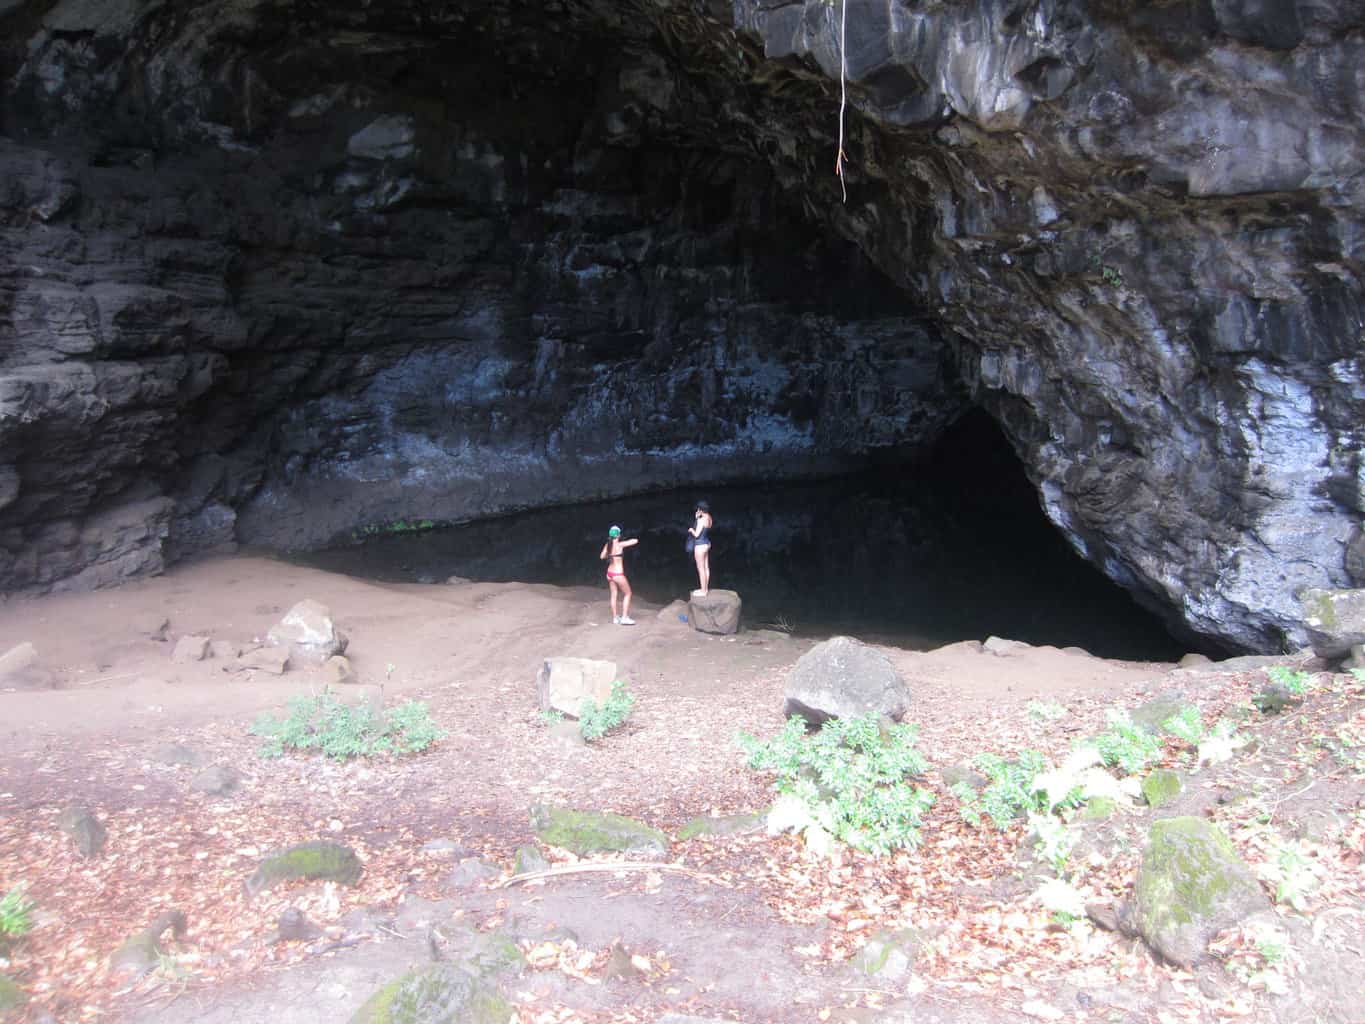 Waikanaloa Wet Cave